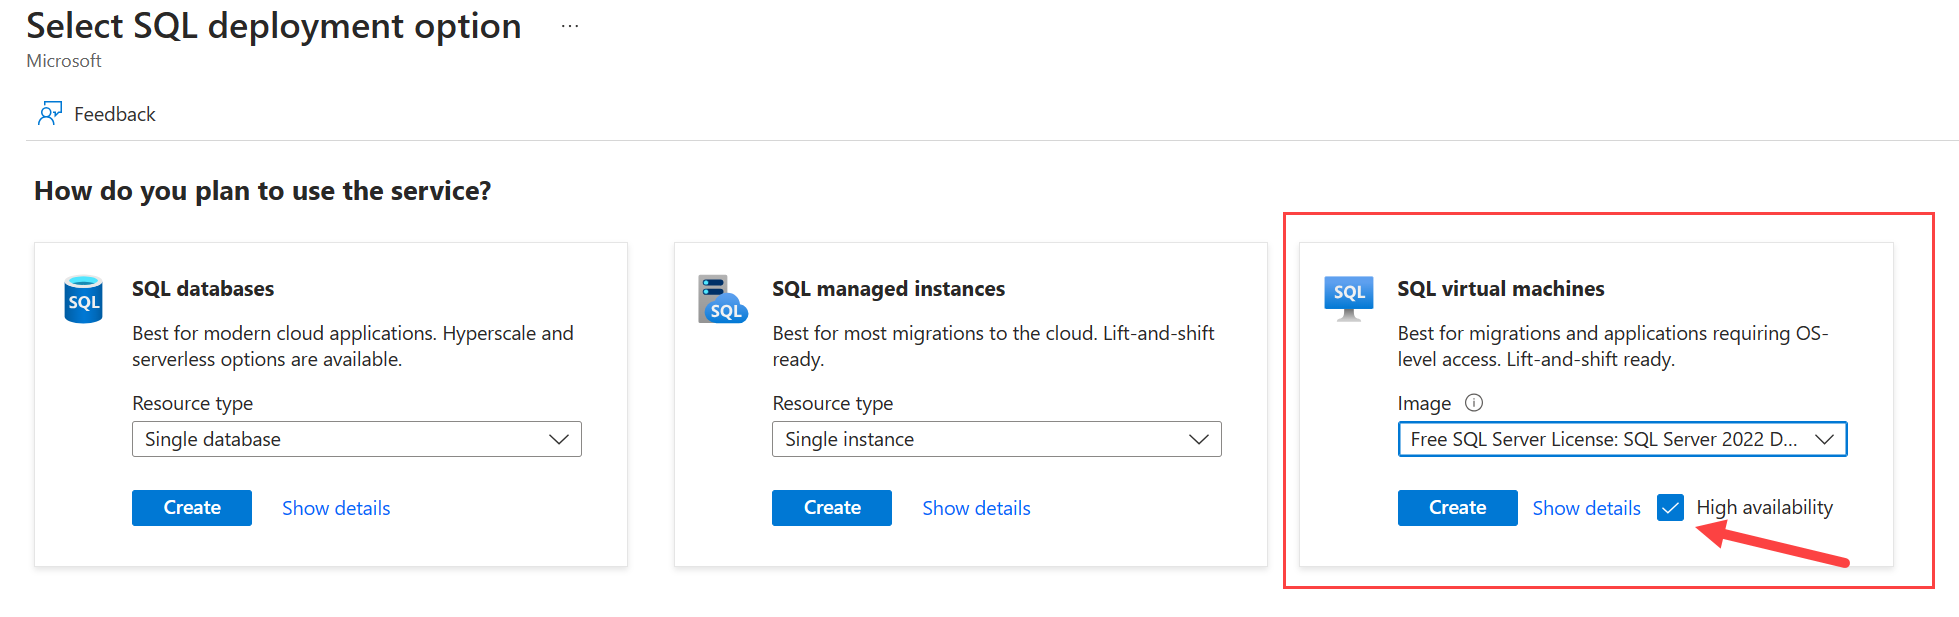 고가용성이 선택된 SQL Server 배포 옵션을 선택하기 위한 페이지를 보여 주는 Azure Portal 스크린샷